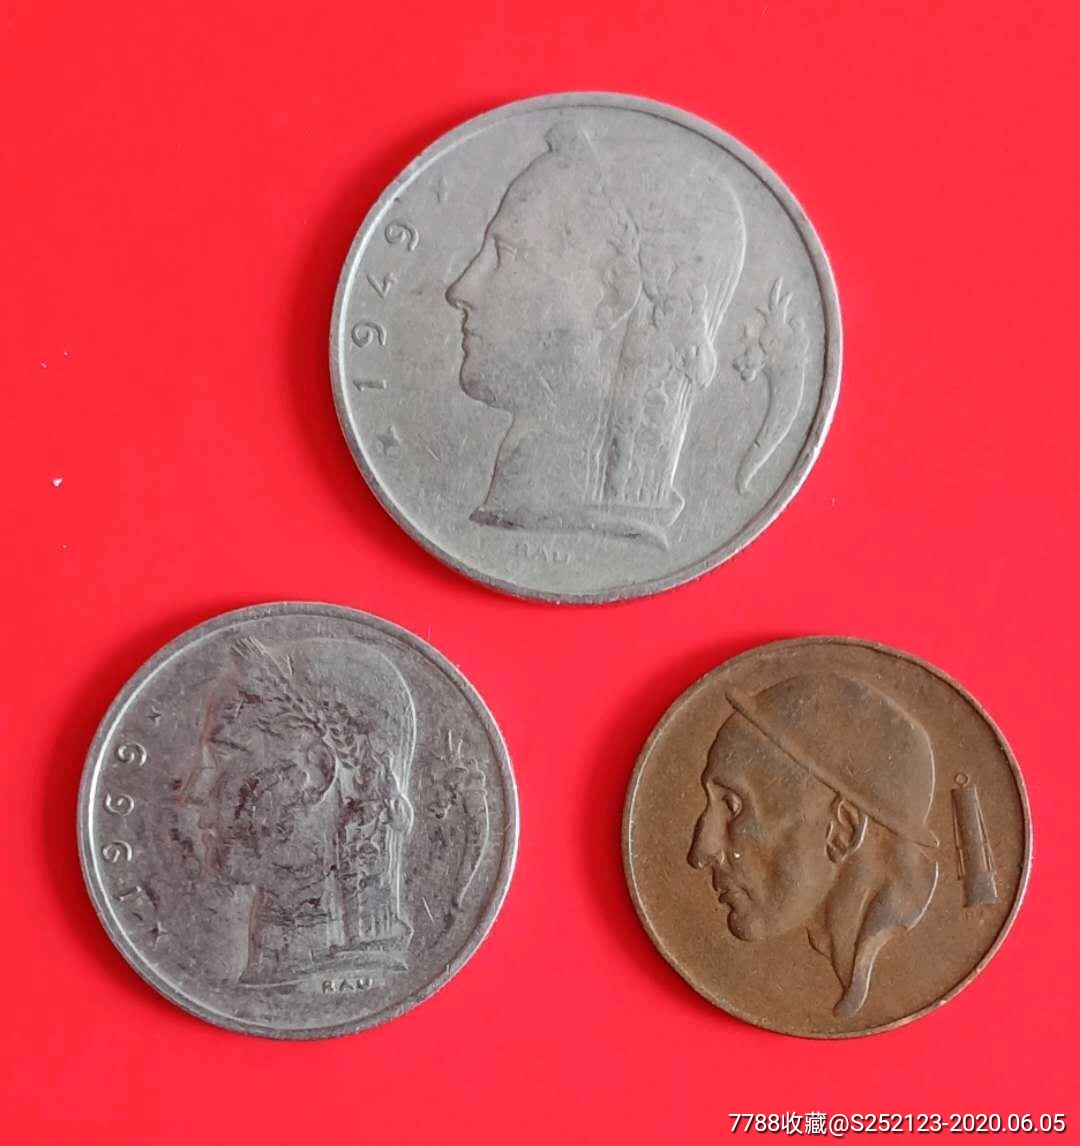 【包邮】比利时王国早期硬币一套